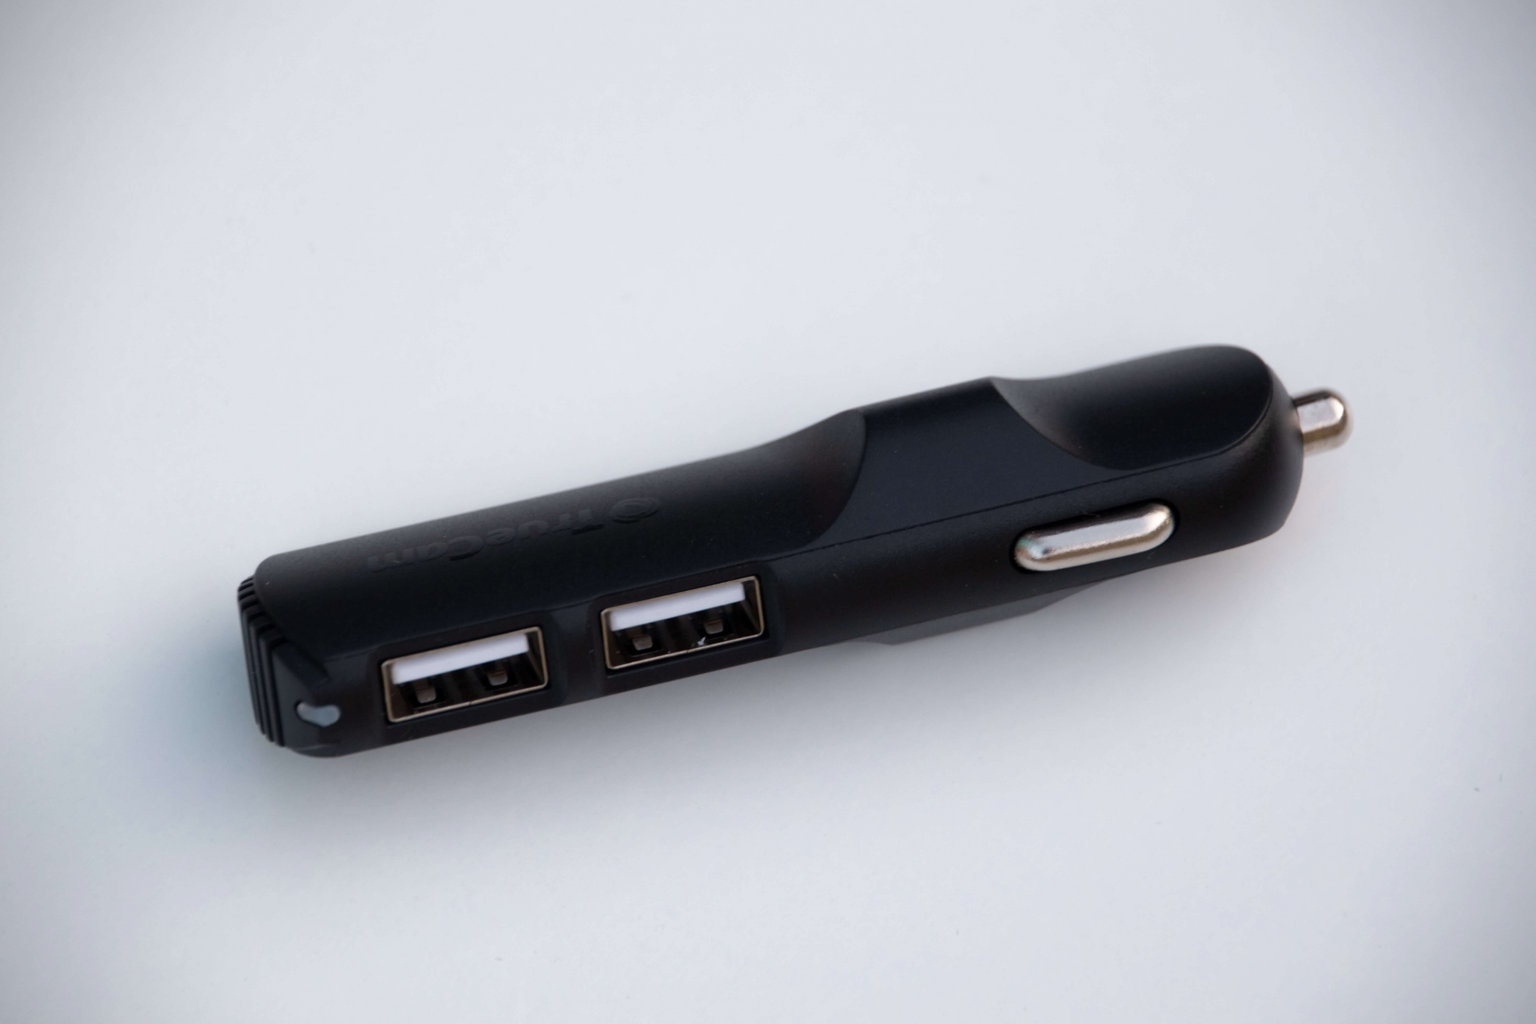 Přibalený adaptér je zároveň praktickou USB rozdvojkou